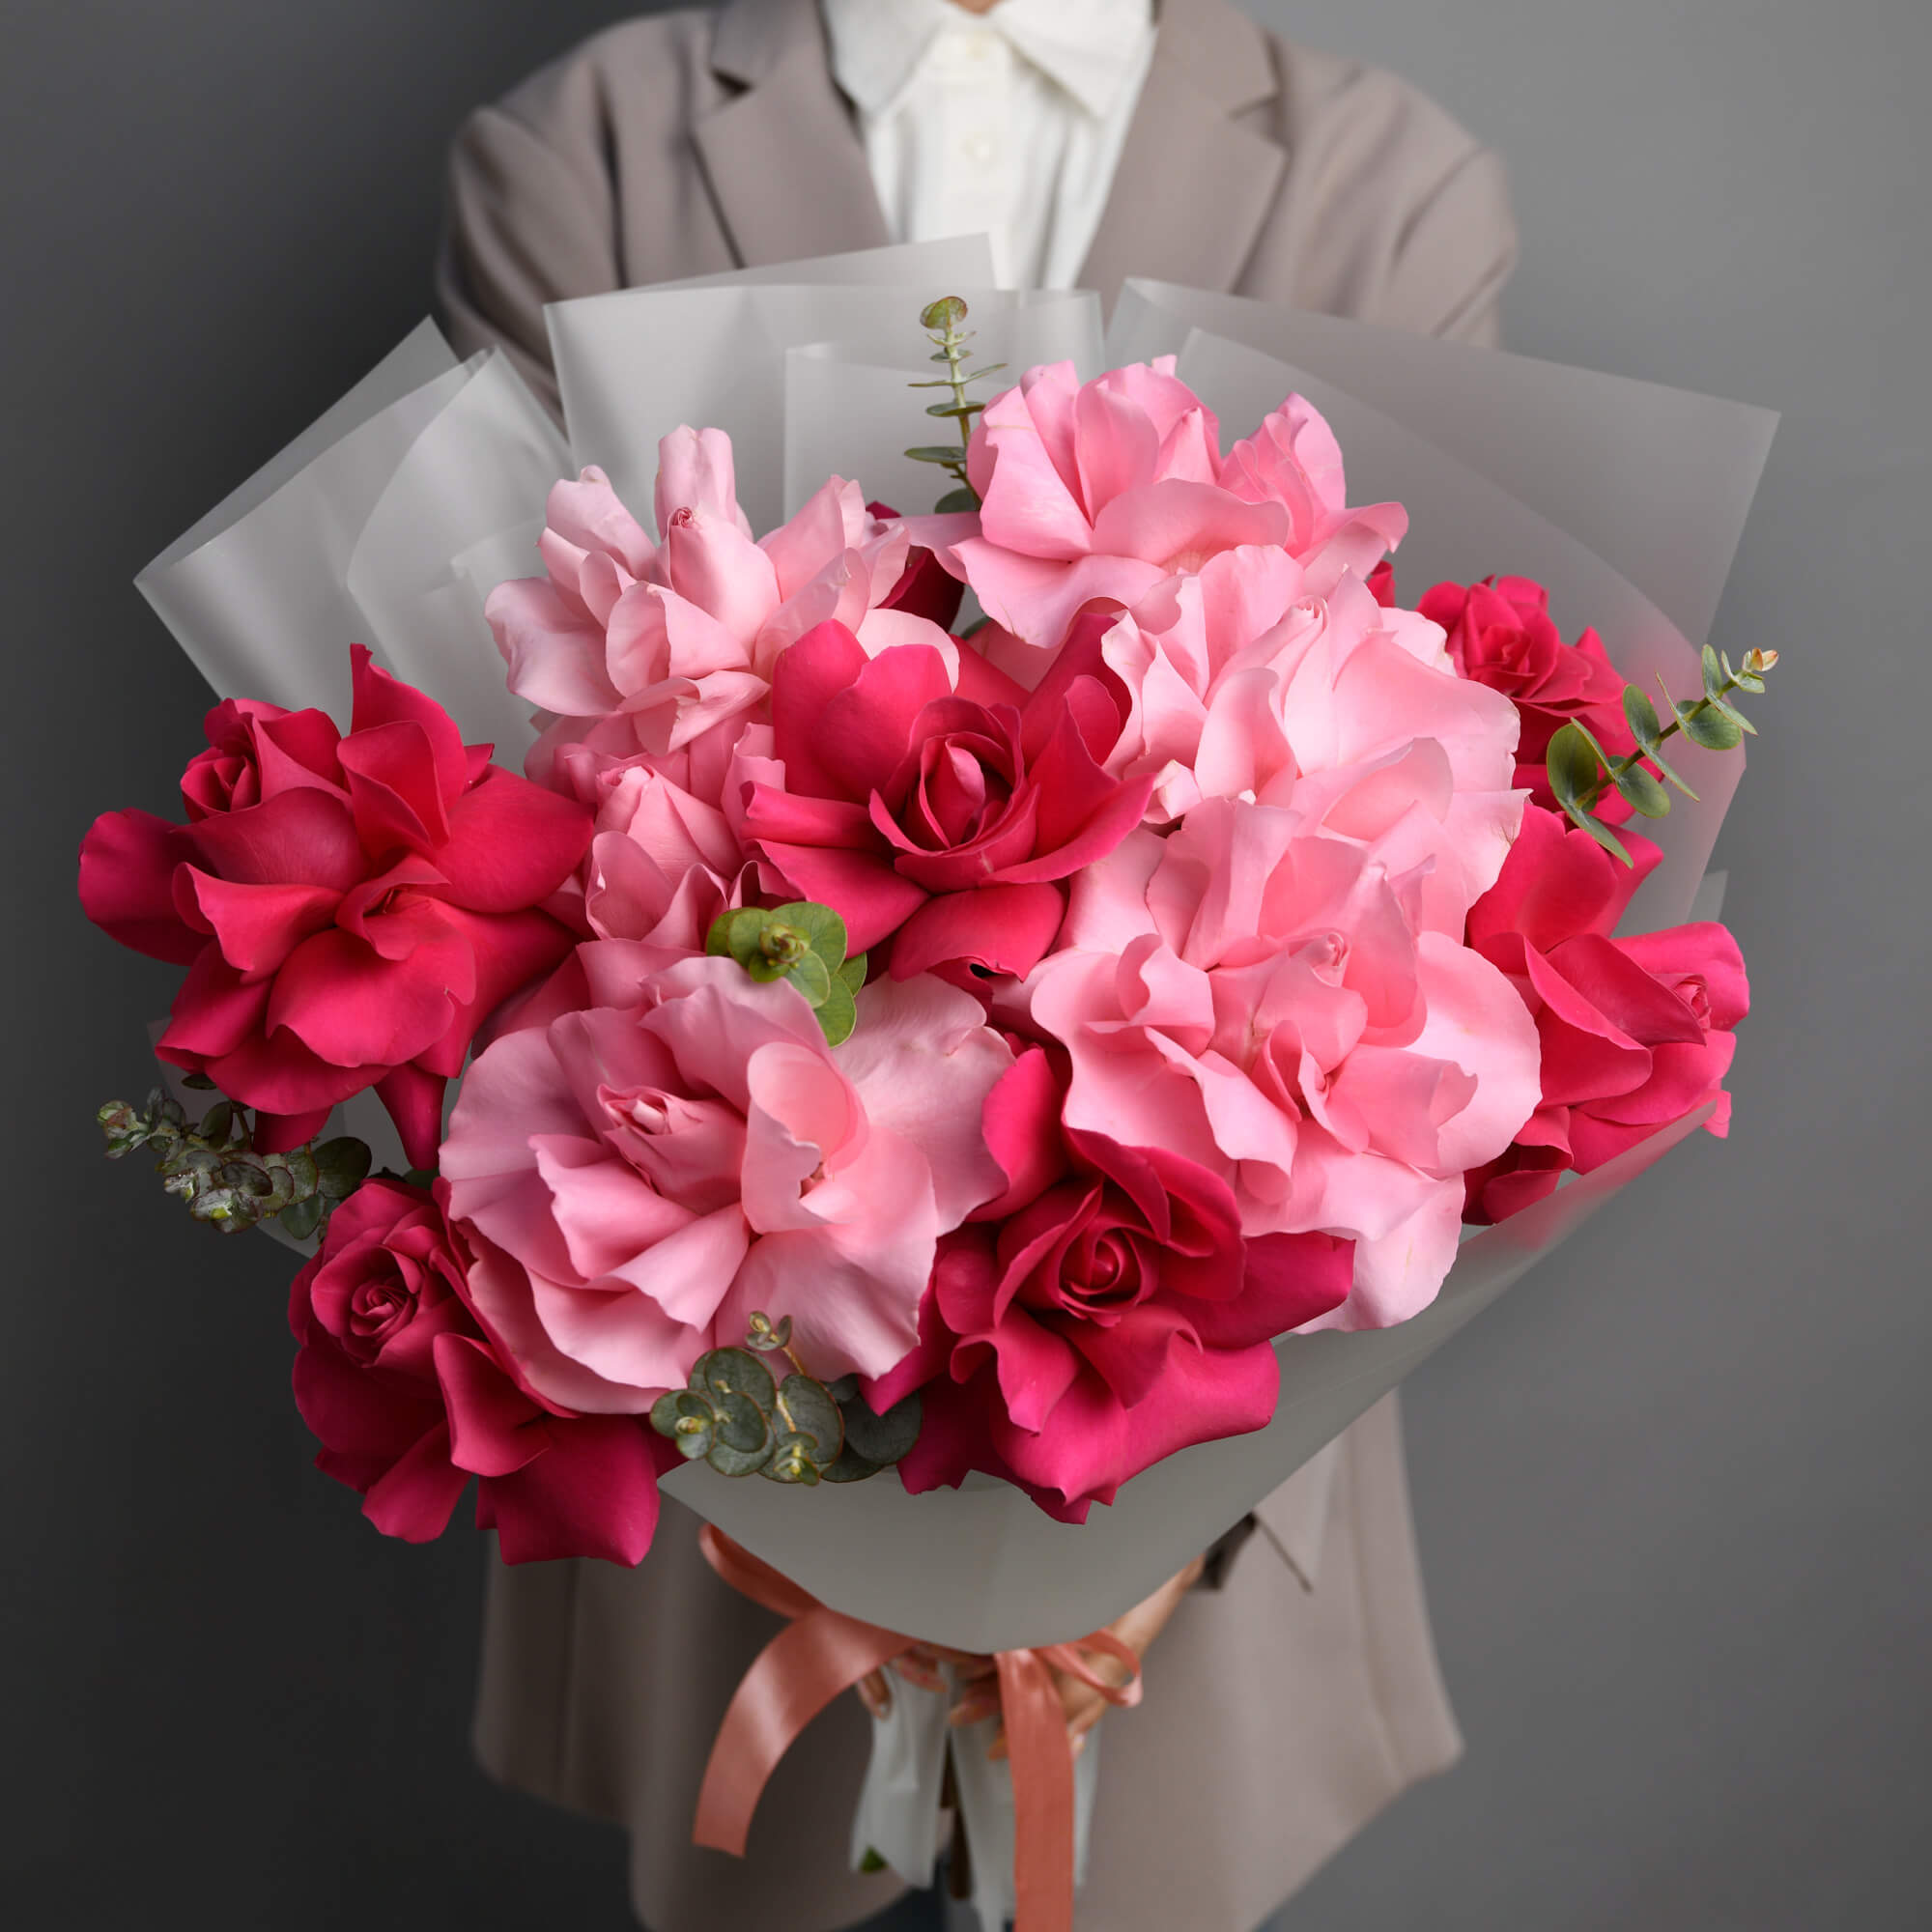 Buchet cu trandafiri speciali roz multicolori, 2